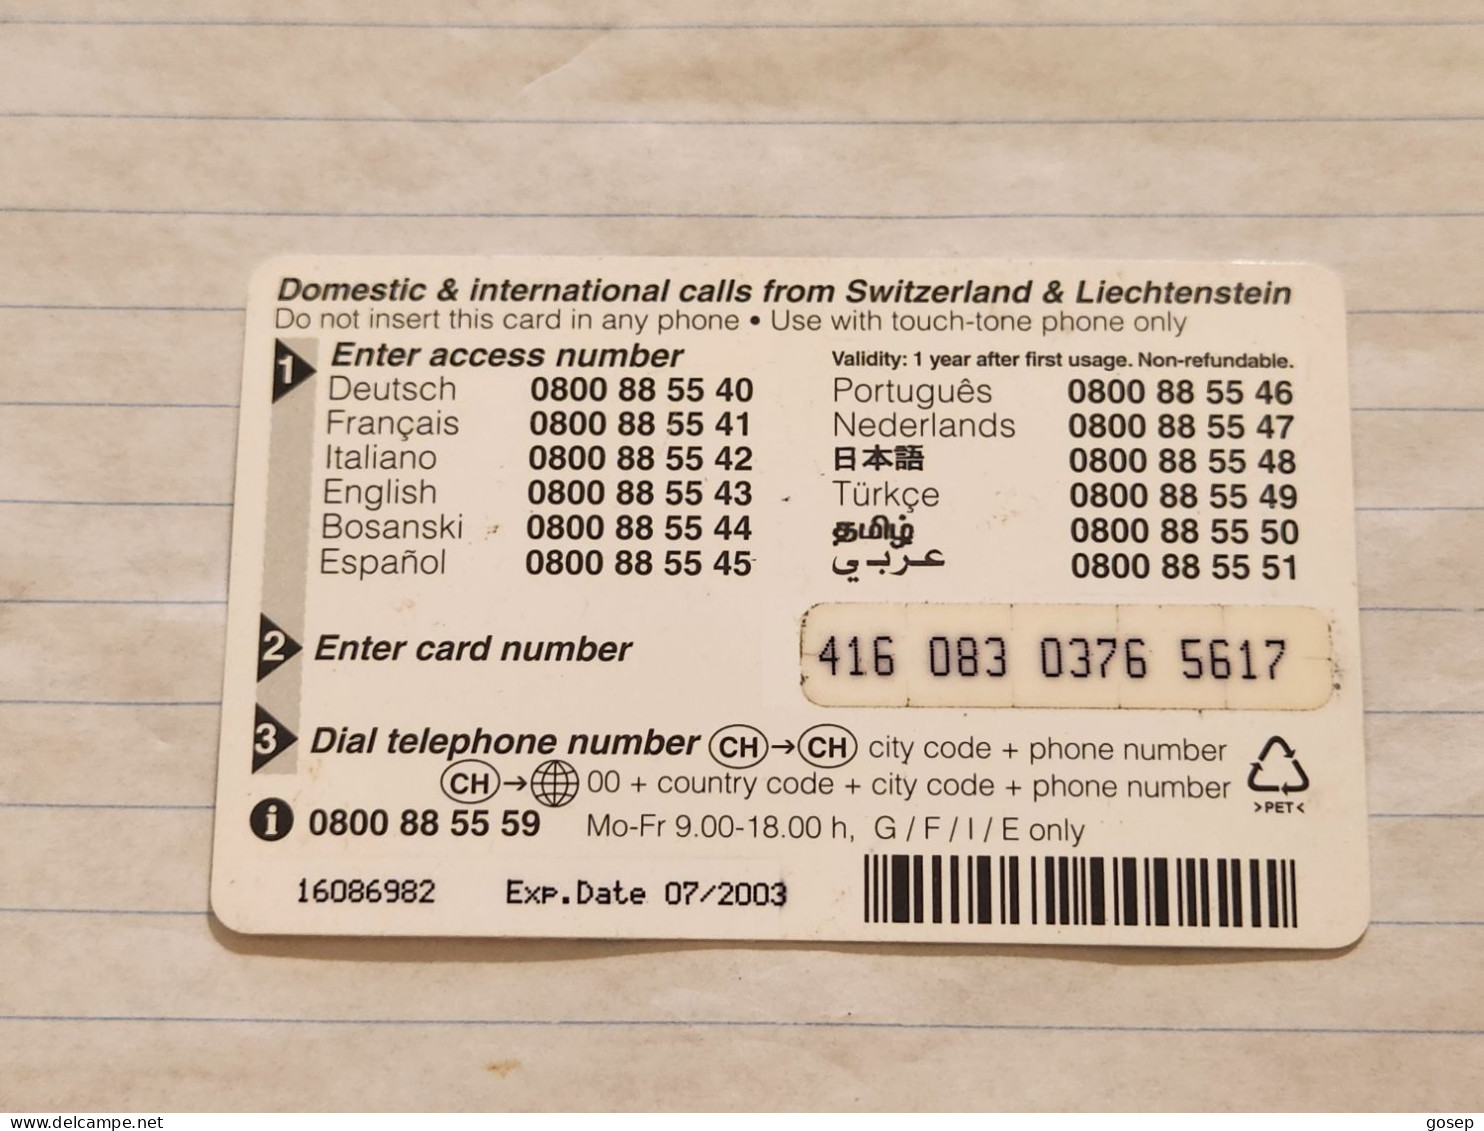 LIECHTENSTEIN-(LI-18B)-SHARK-(56)(416-083-0376-5617)(20CHF)-(7/03)(16086982)-tirage-300.000-used Card - Liechtenstein